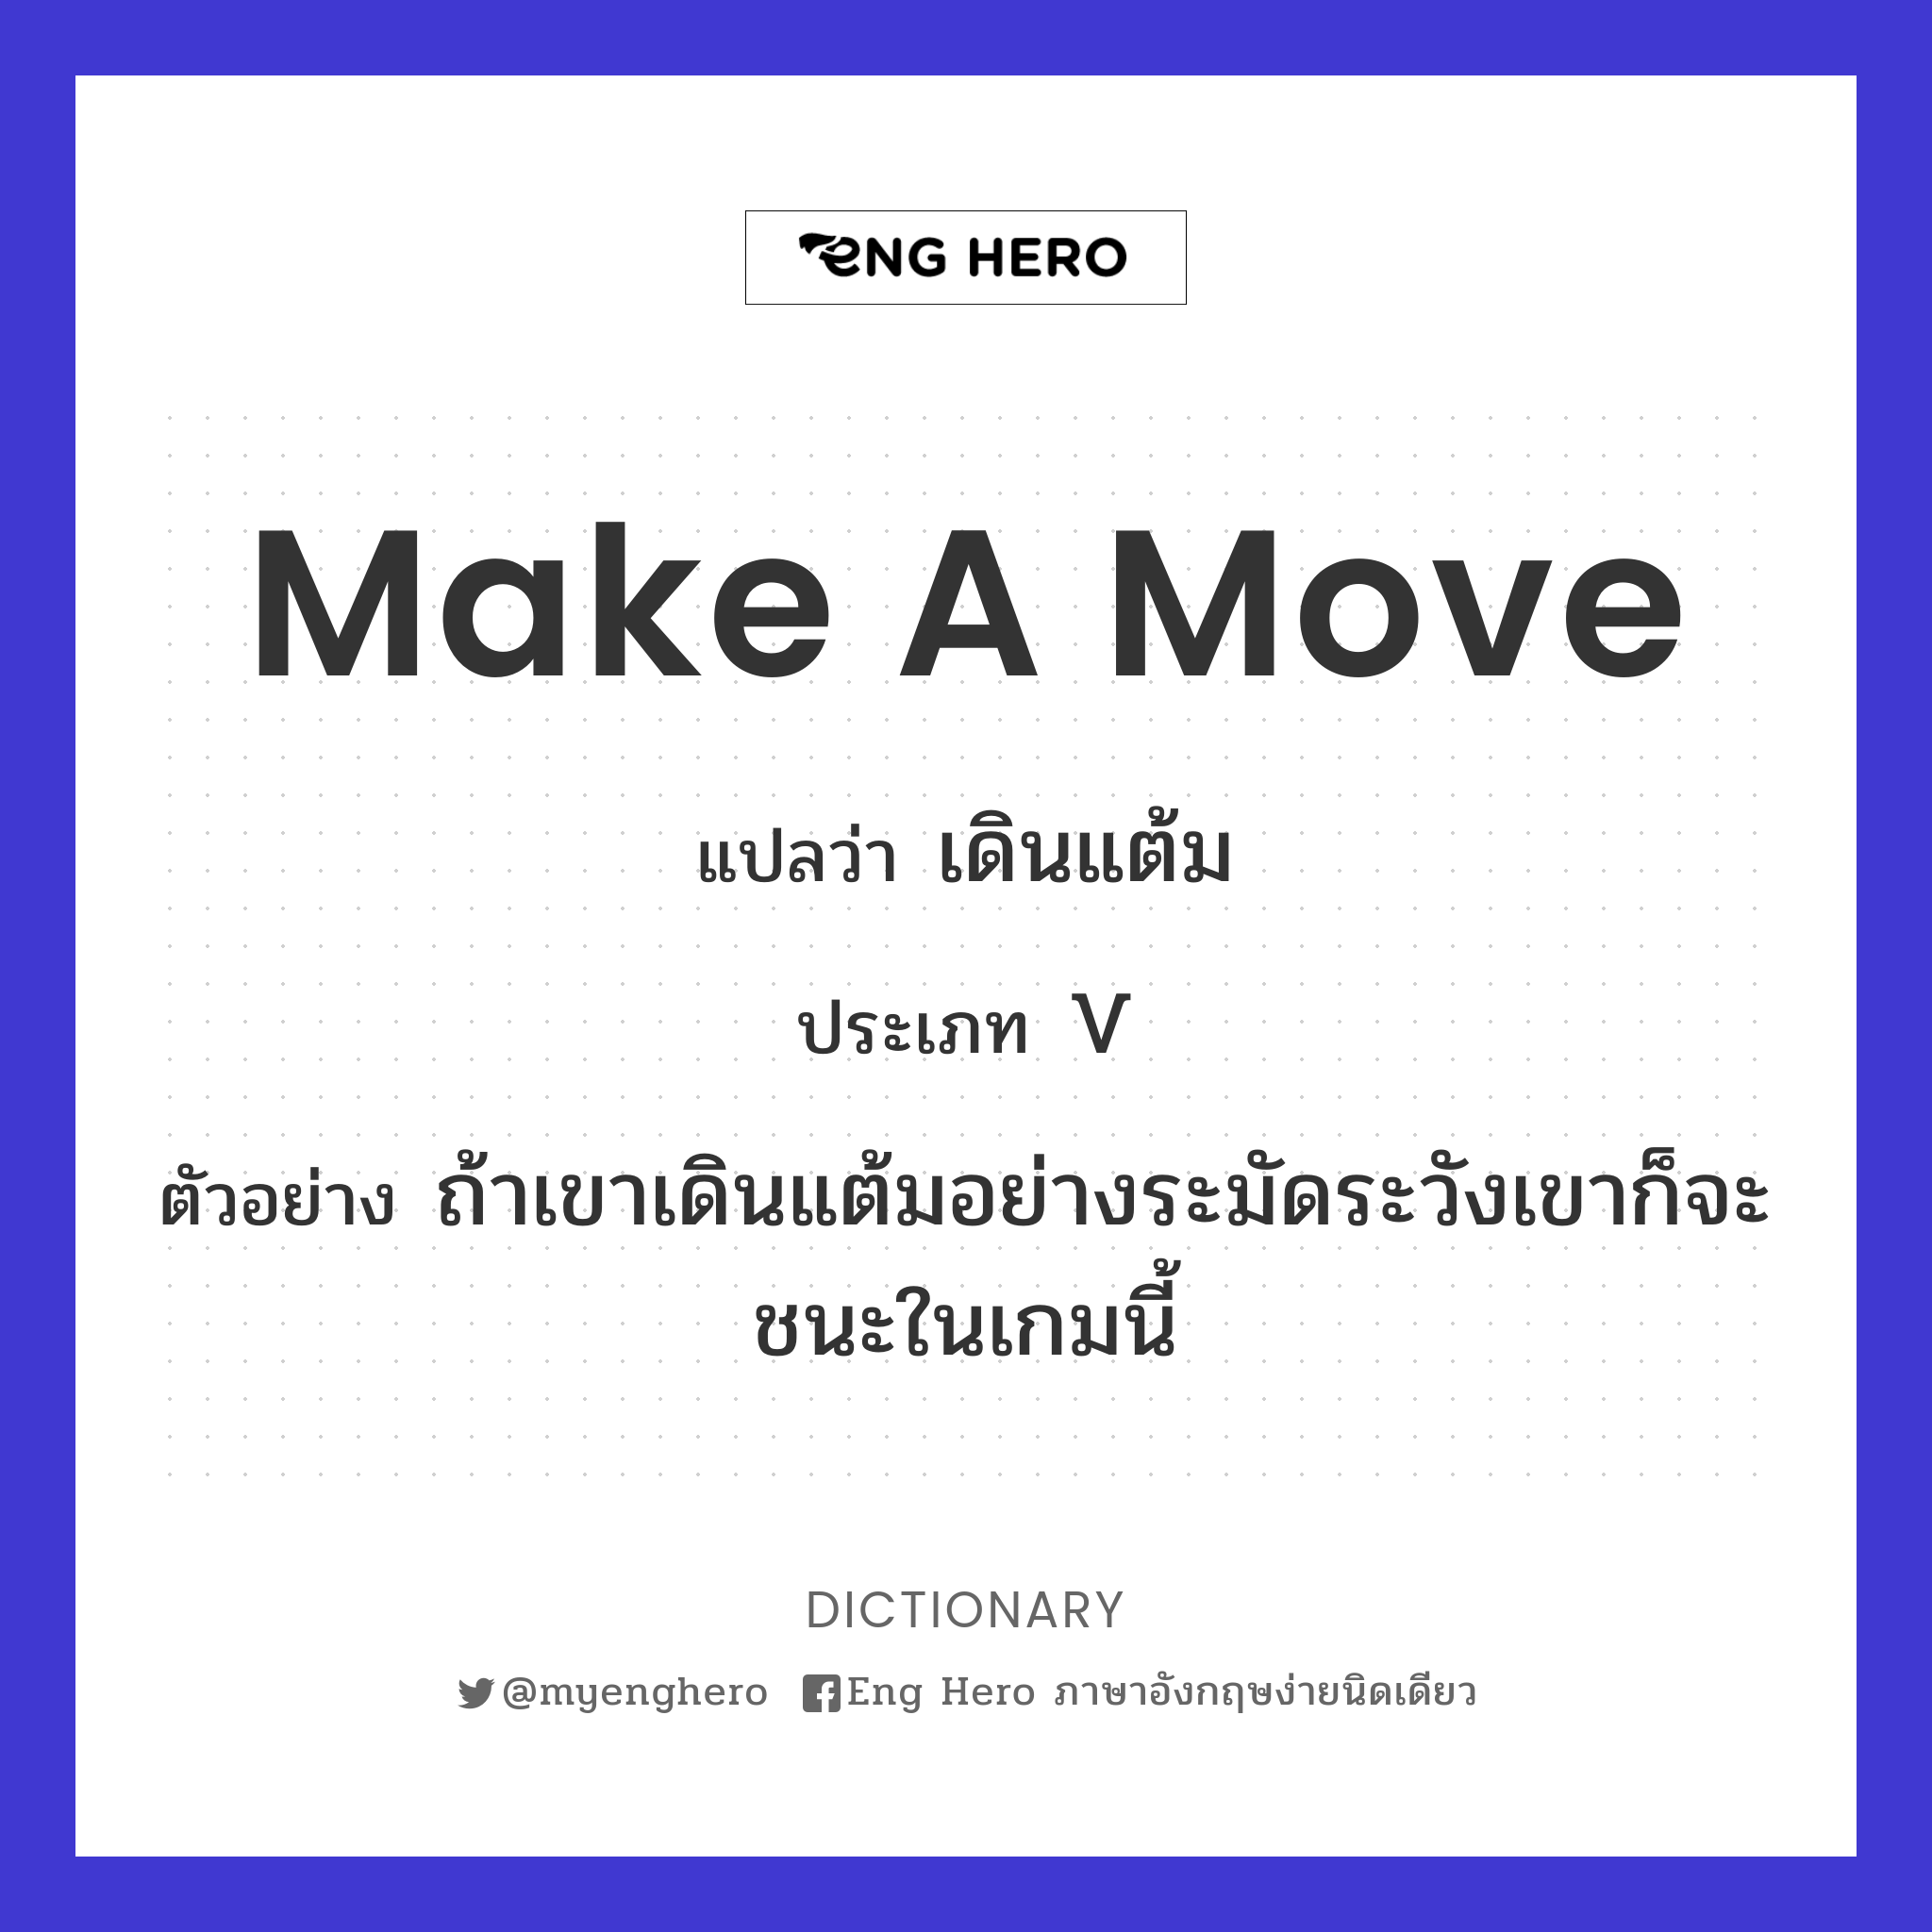 make a move